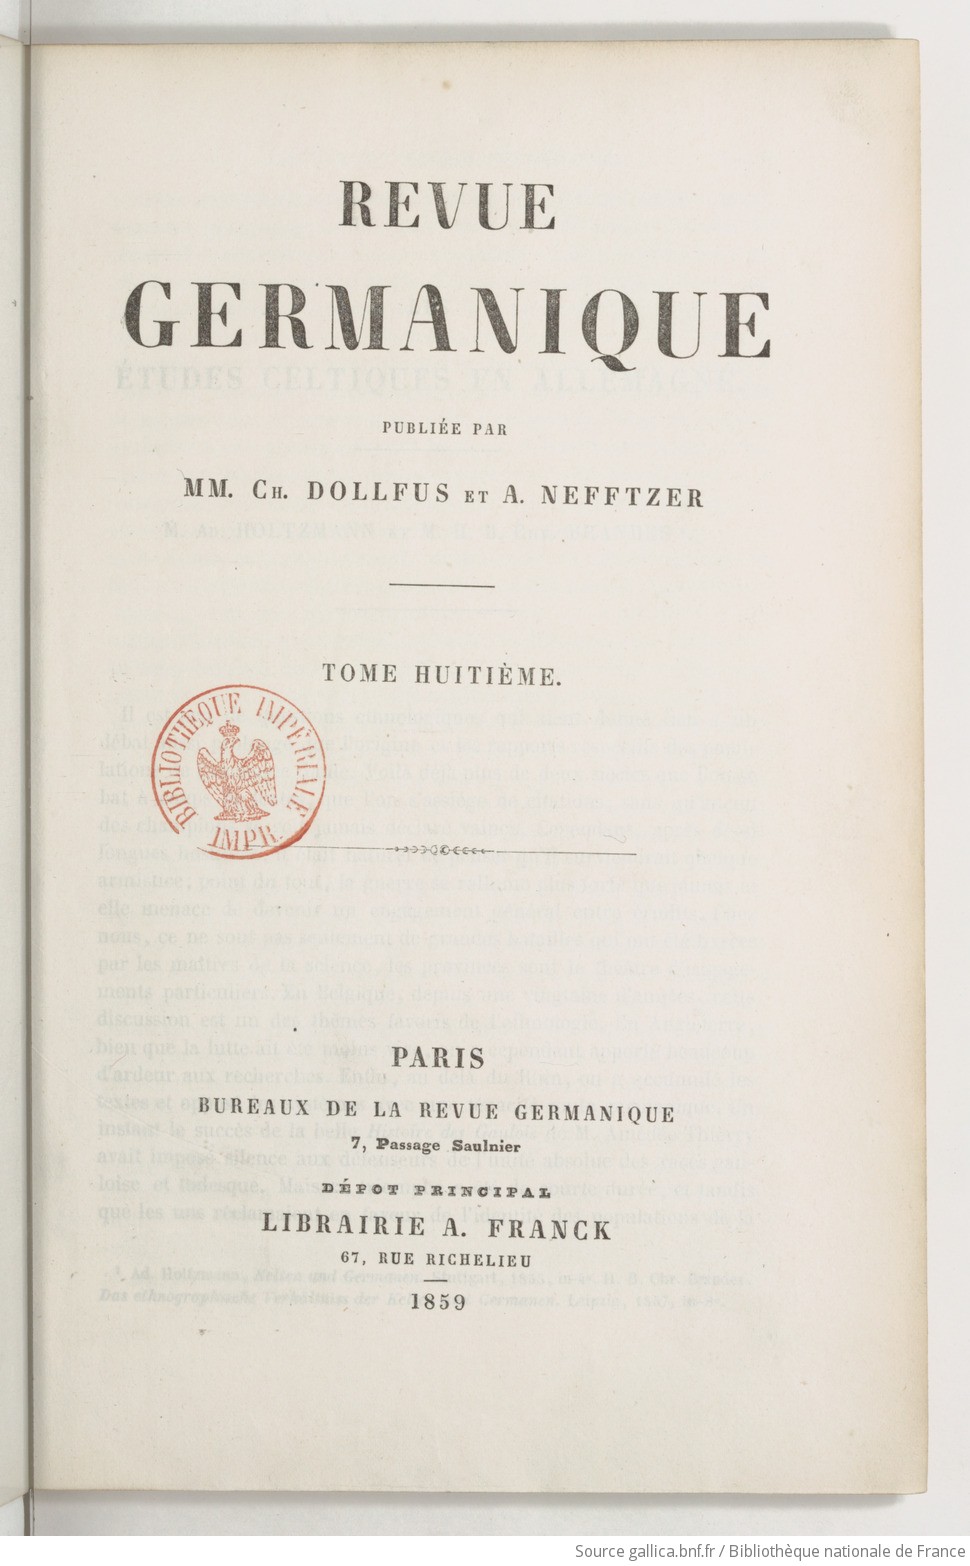 Revue germanique / publiée par MM. Ch. Dollfus et A. Nefftzer